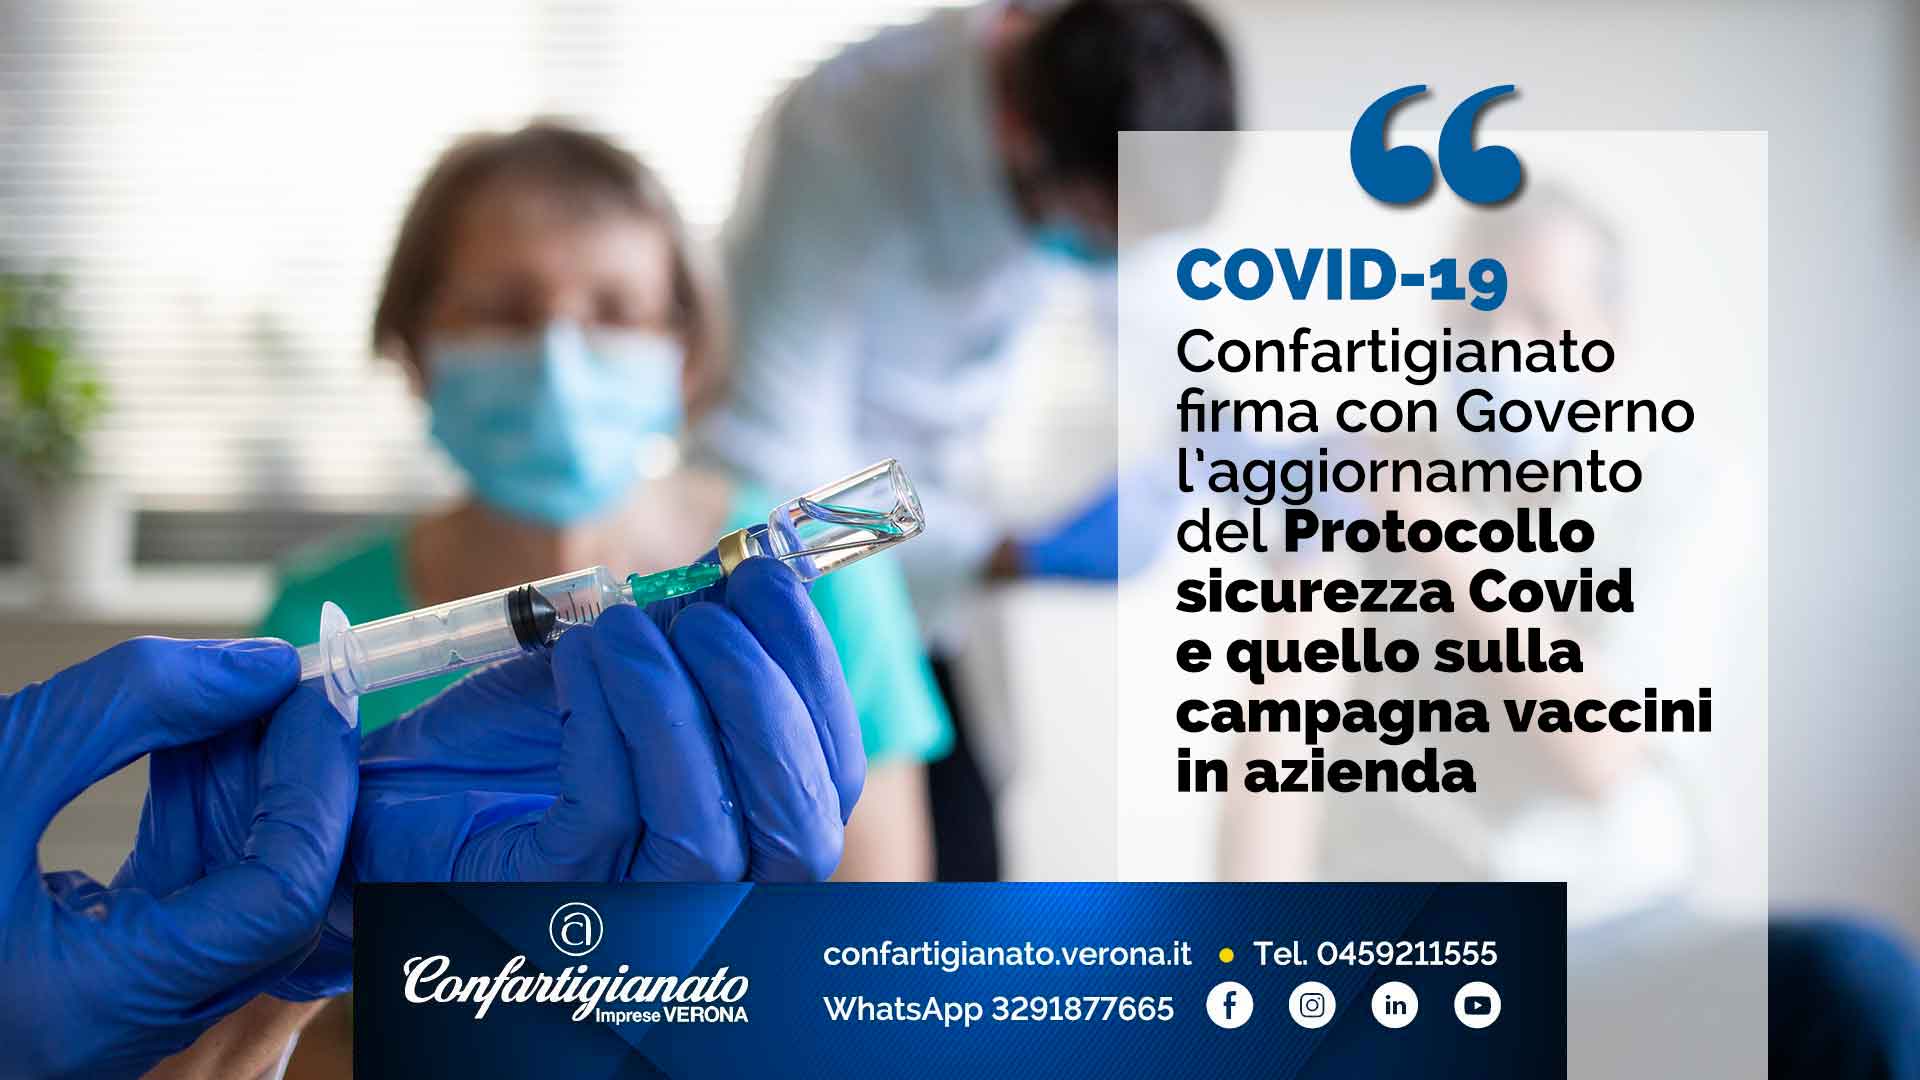 COVID 19 – Confartigianato firma con Governo l’aggiornamento del Protocollo sicurezza Covid e quello sulla campagna vaccini in azienda